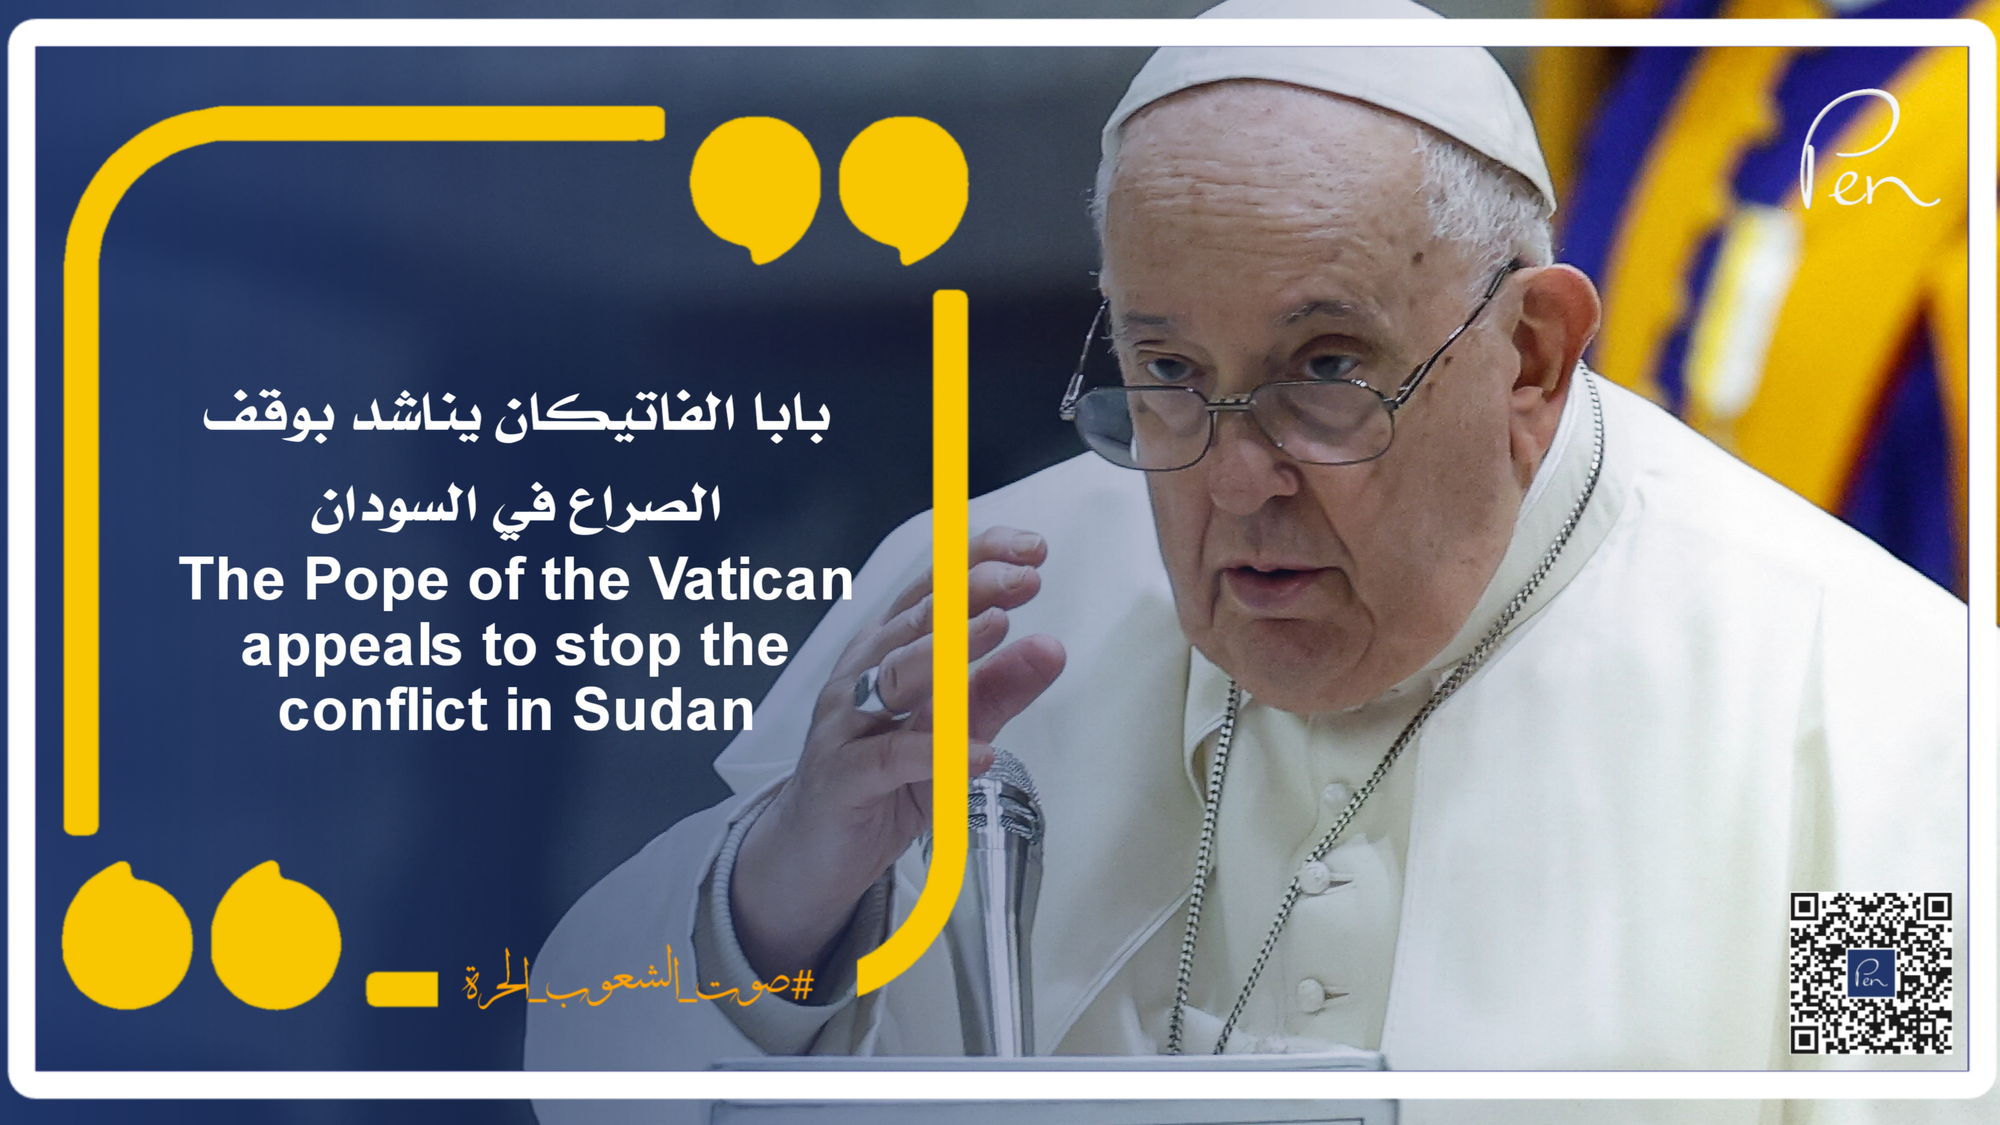 بابا الفاتيكان يناشد بوقف الصراع في السودان